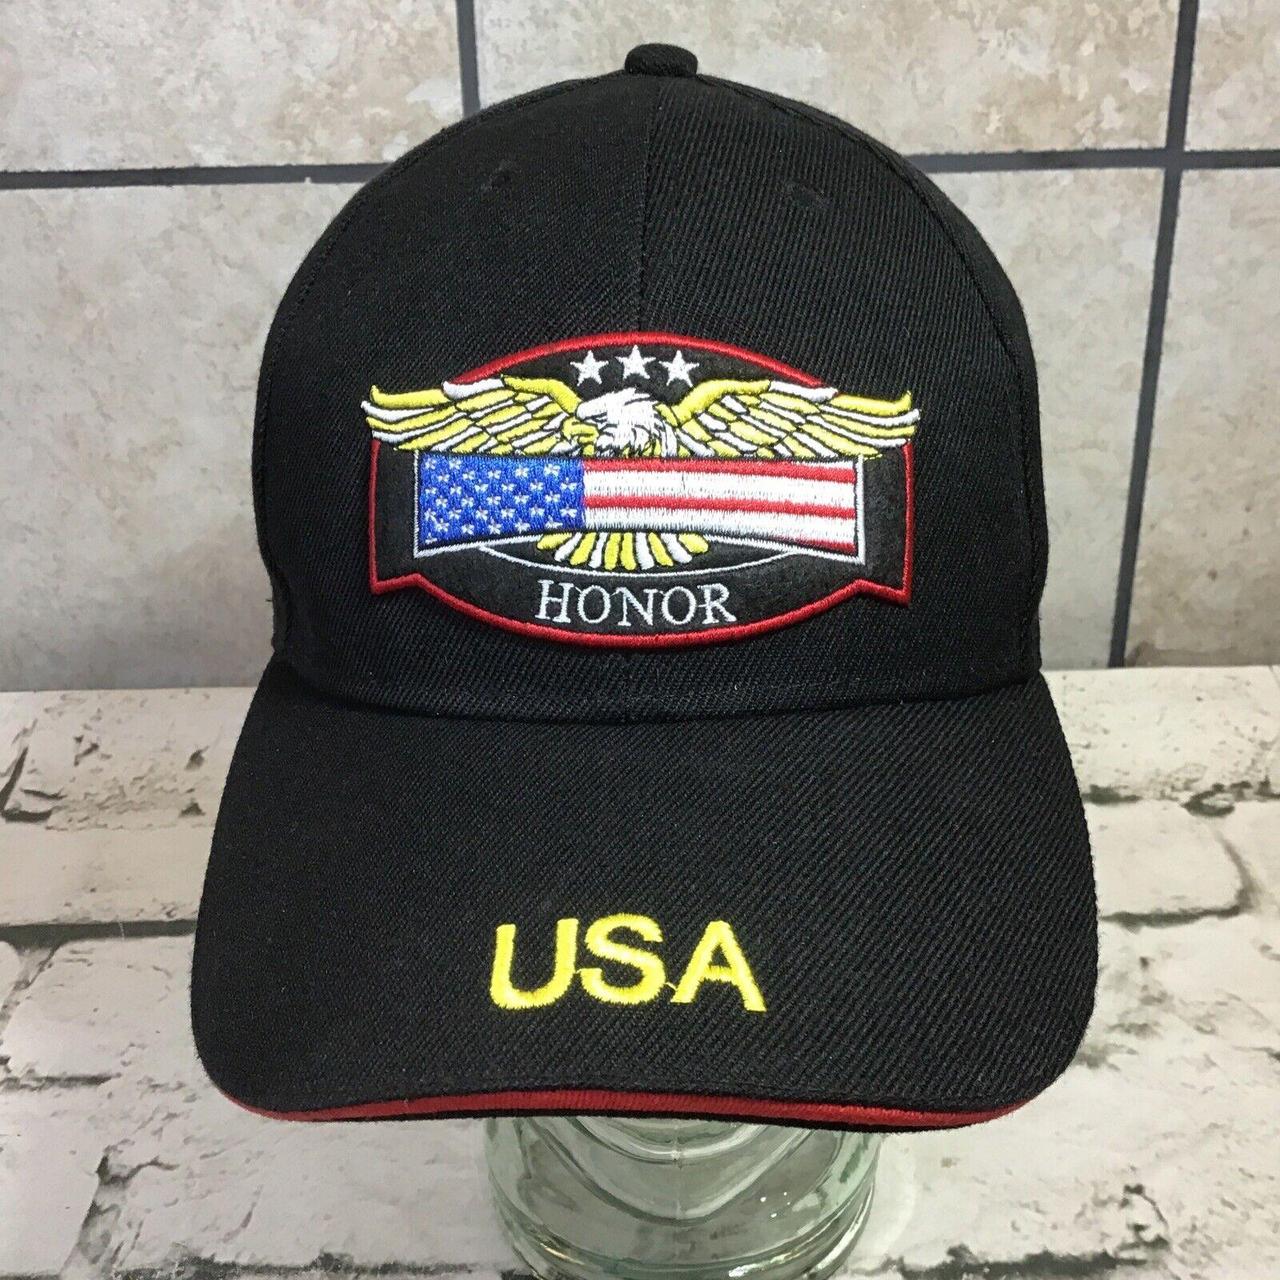 iHome Men's Hat